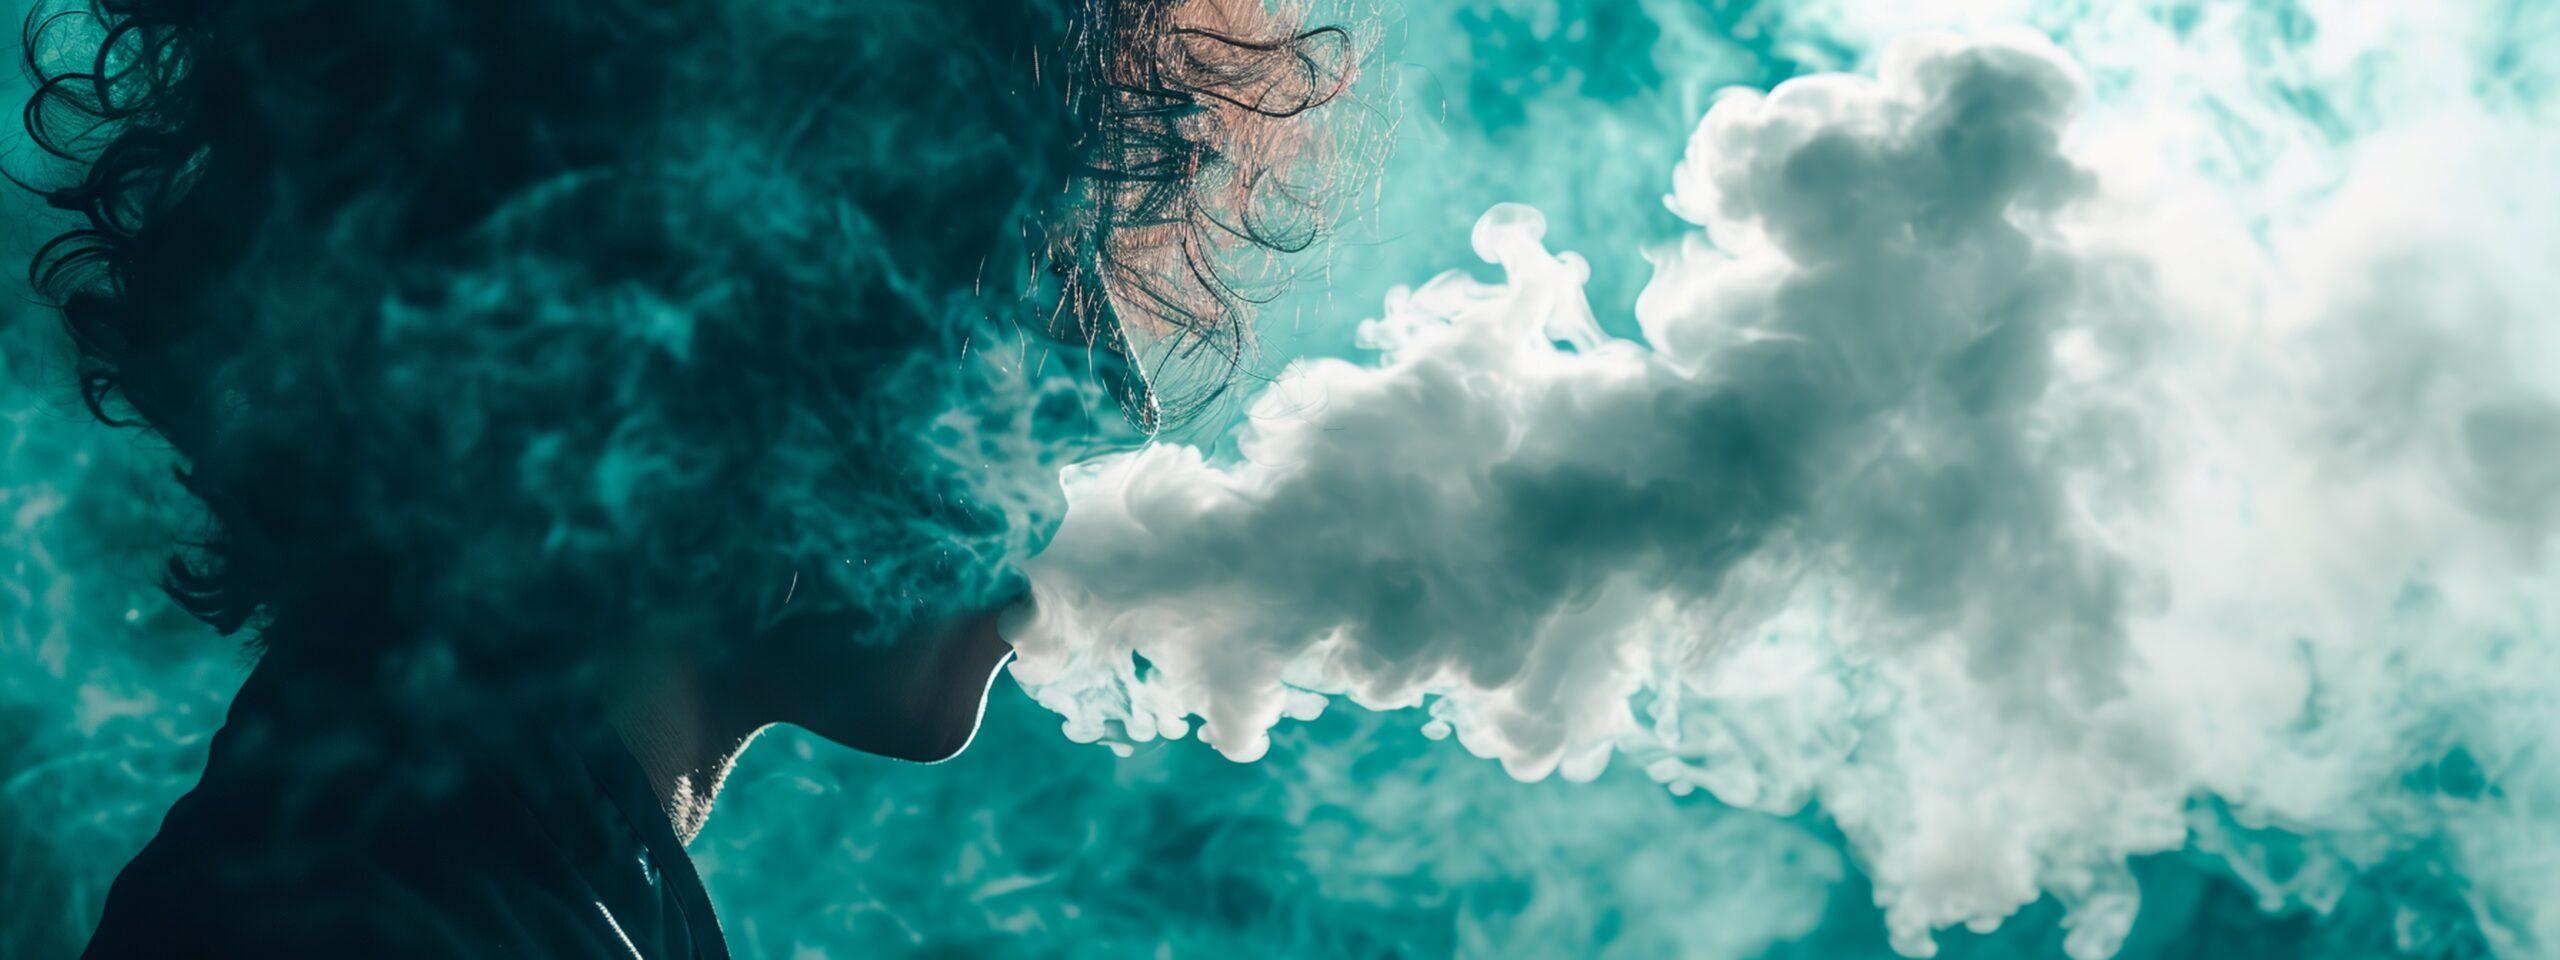 Person beim Dampfen einer Einweg-E-Zigarette, wobei eine große Wolke aus Dampf erzeugt wird, die den Hintergrund in einem nebligen, türkisfarbenen Licht umhüllt.